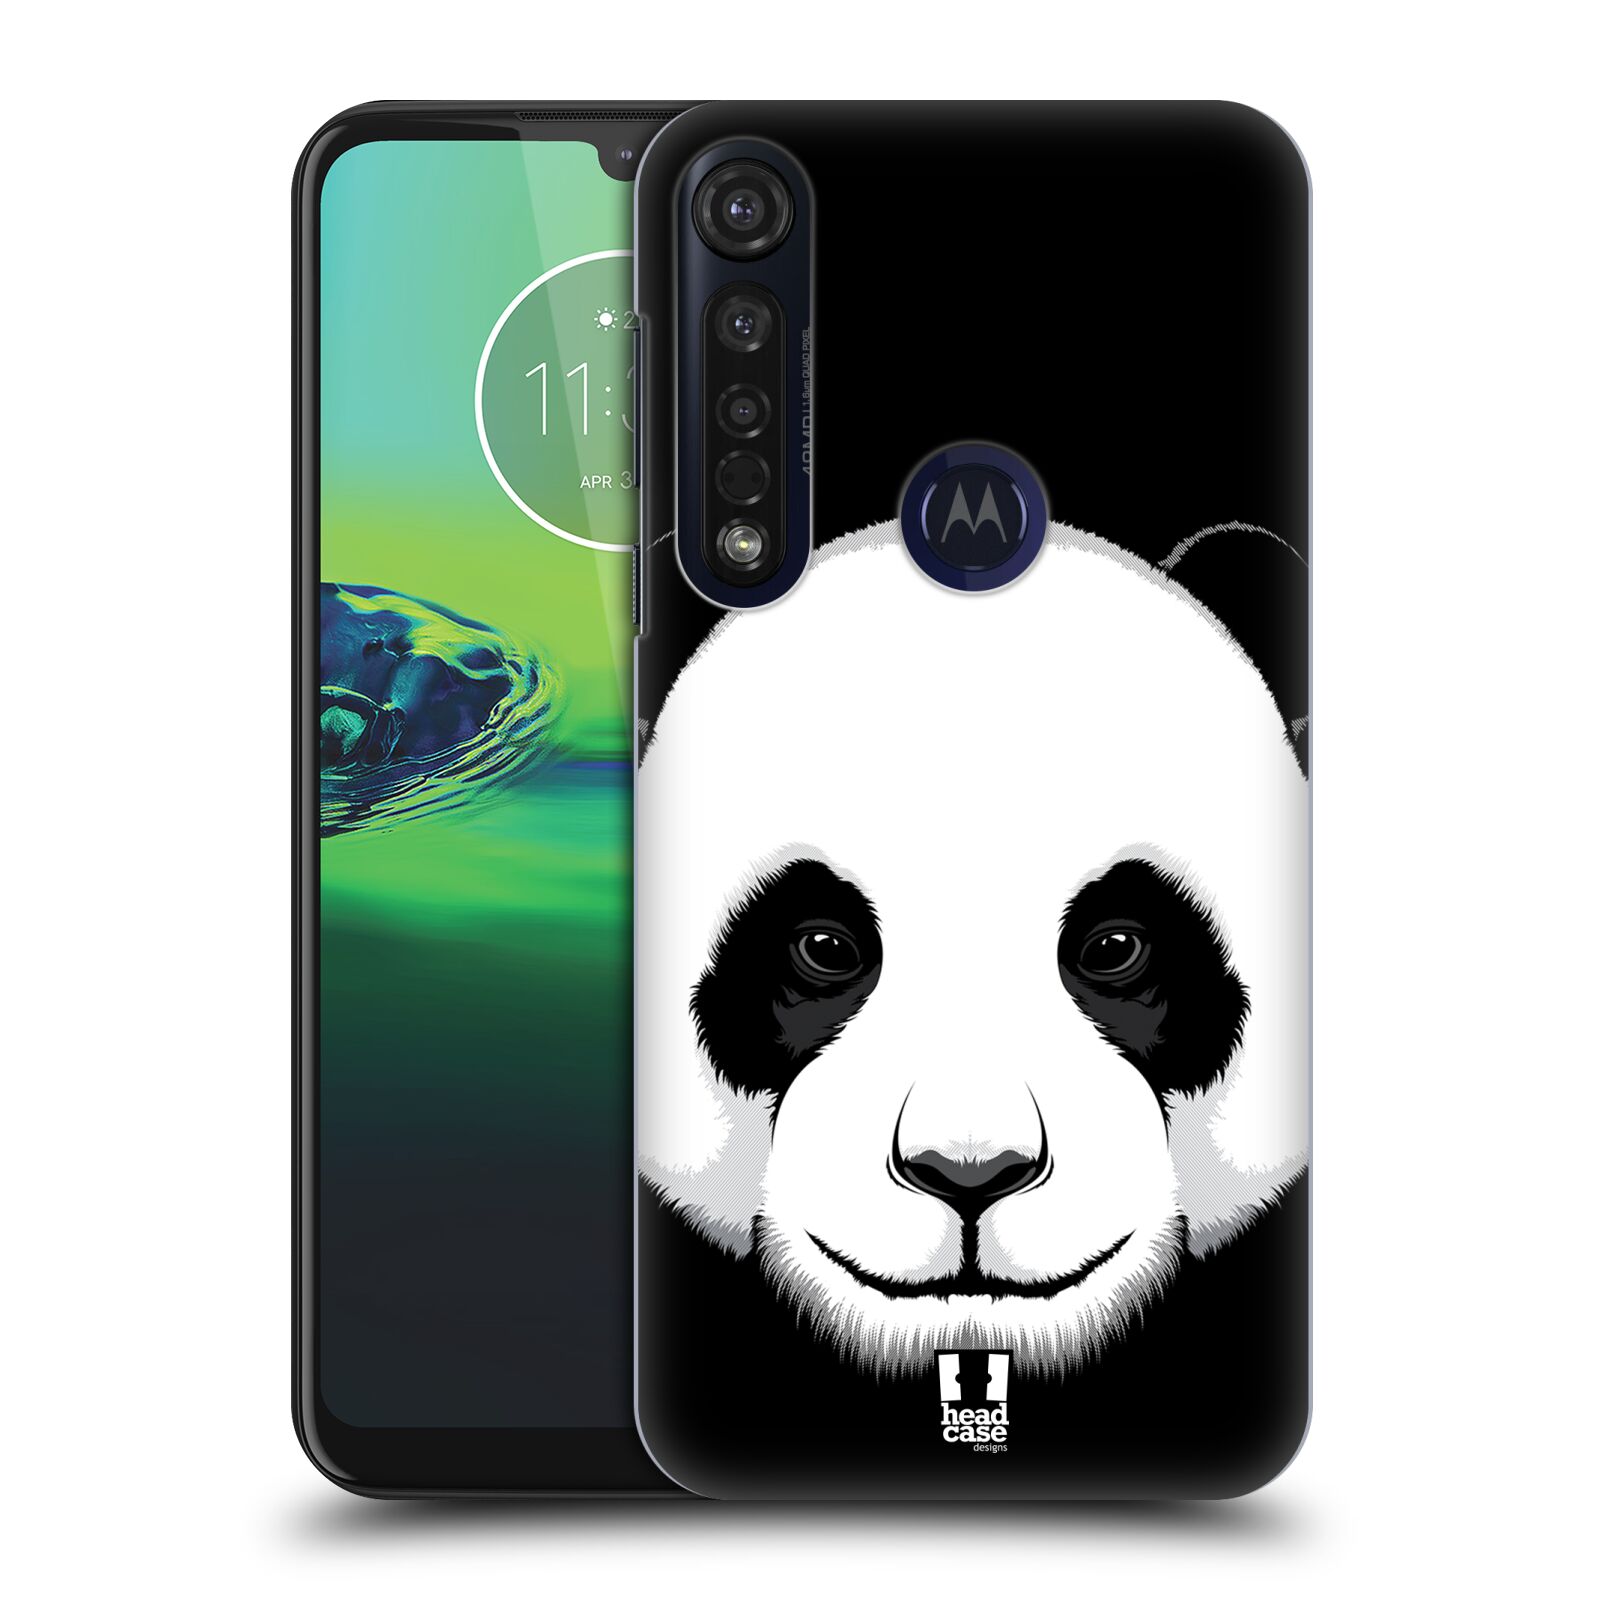 Pouzdro na mobil Motorola Moto G8 PLUS - HEAD CASE - vzor Zvíře kreslená tvář panda